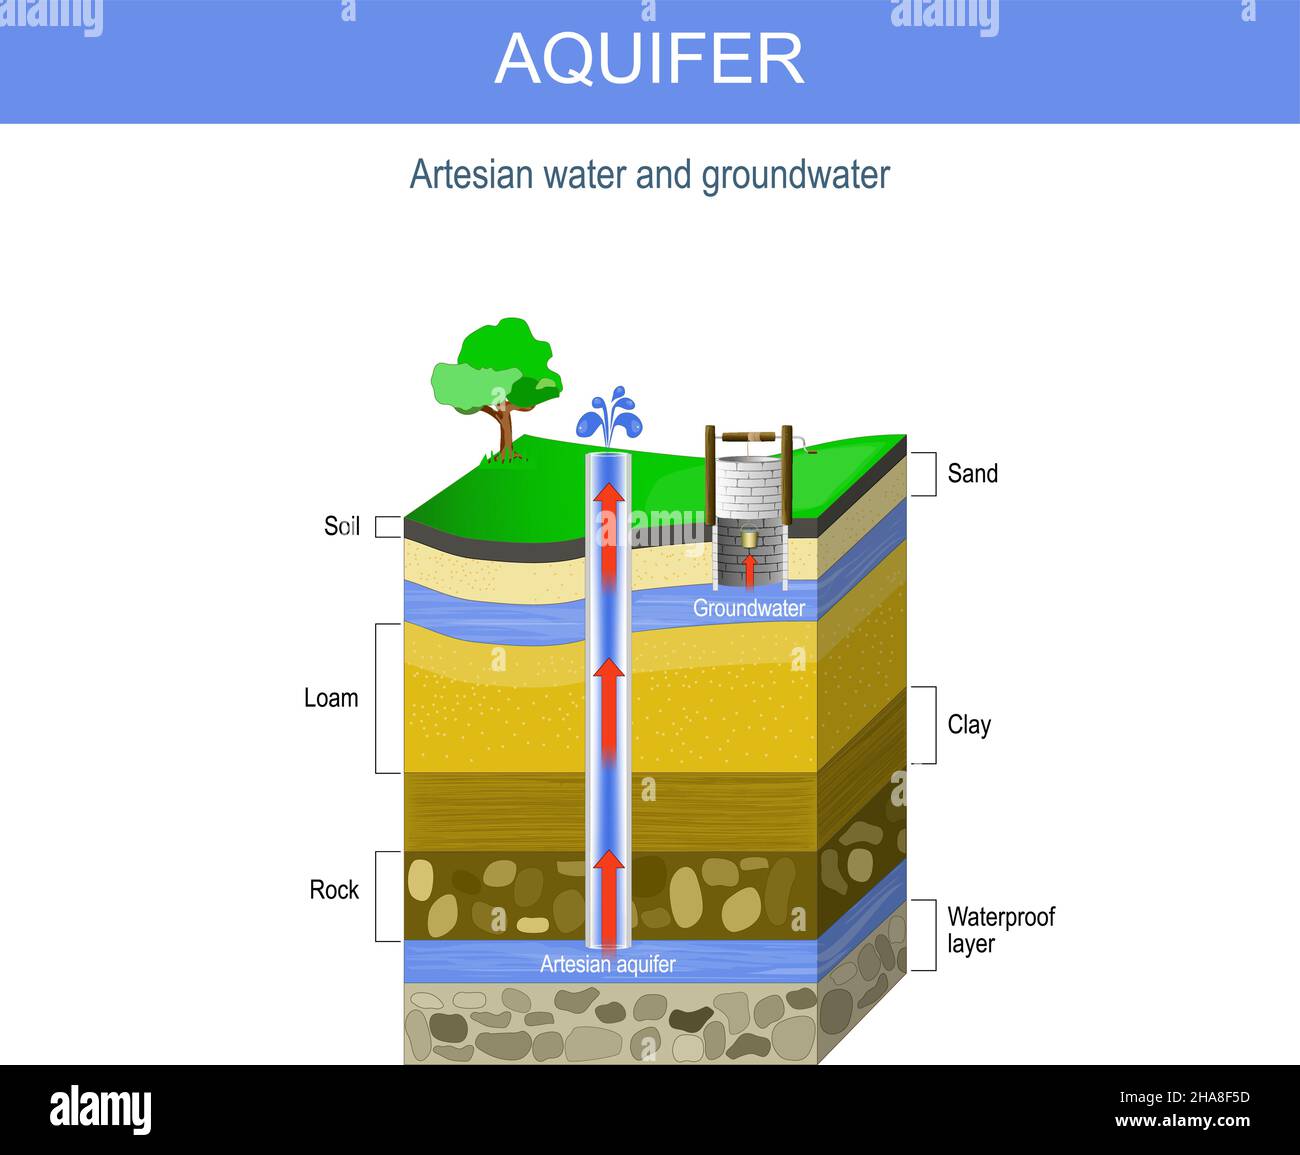 Artesisches Wasser und Grundwasser. Aquifer und artesischer Brunnen. Querschnitt des Bodens mit Sandschicht, Kies, Lehm, Ton und Fels. vektorgrafik. Stock Vektor